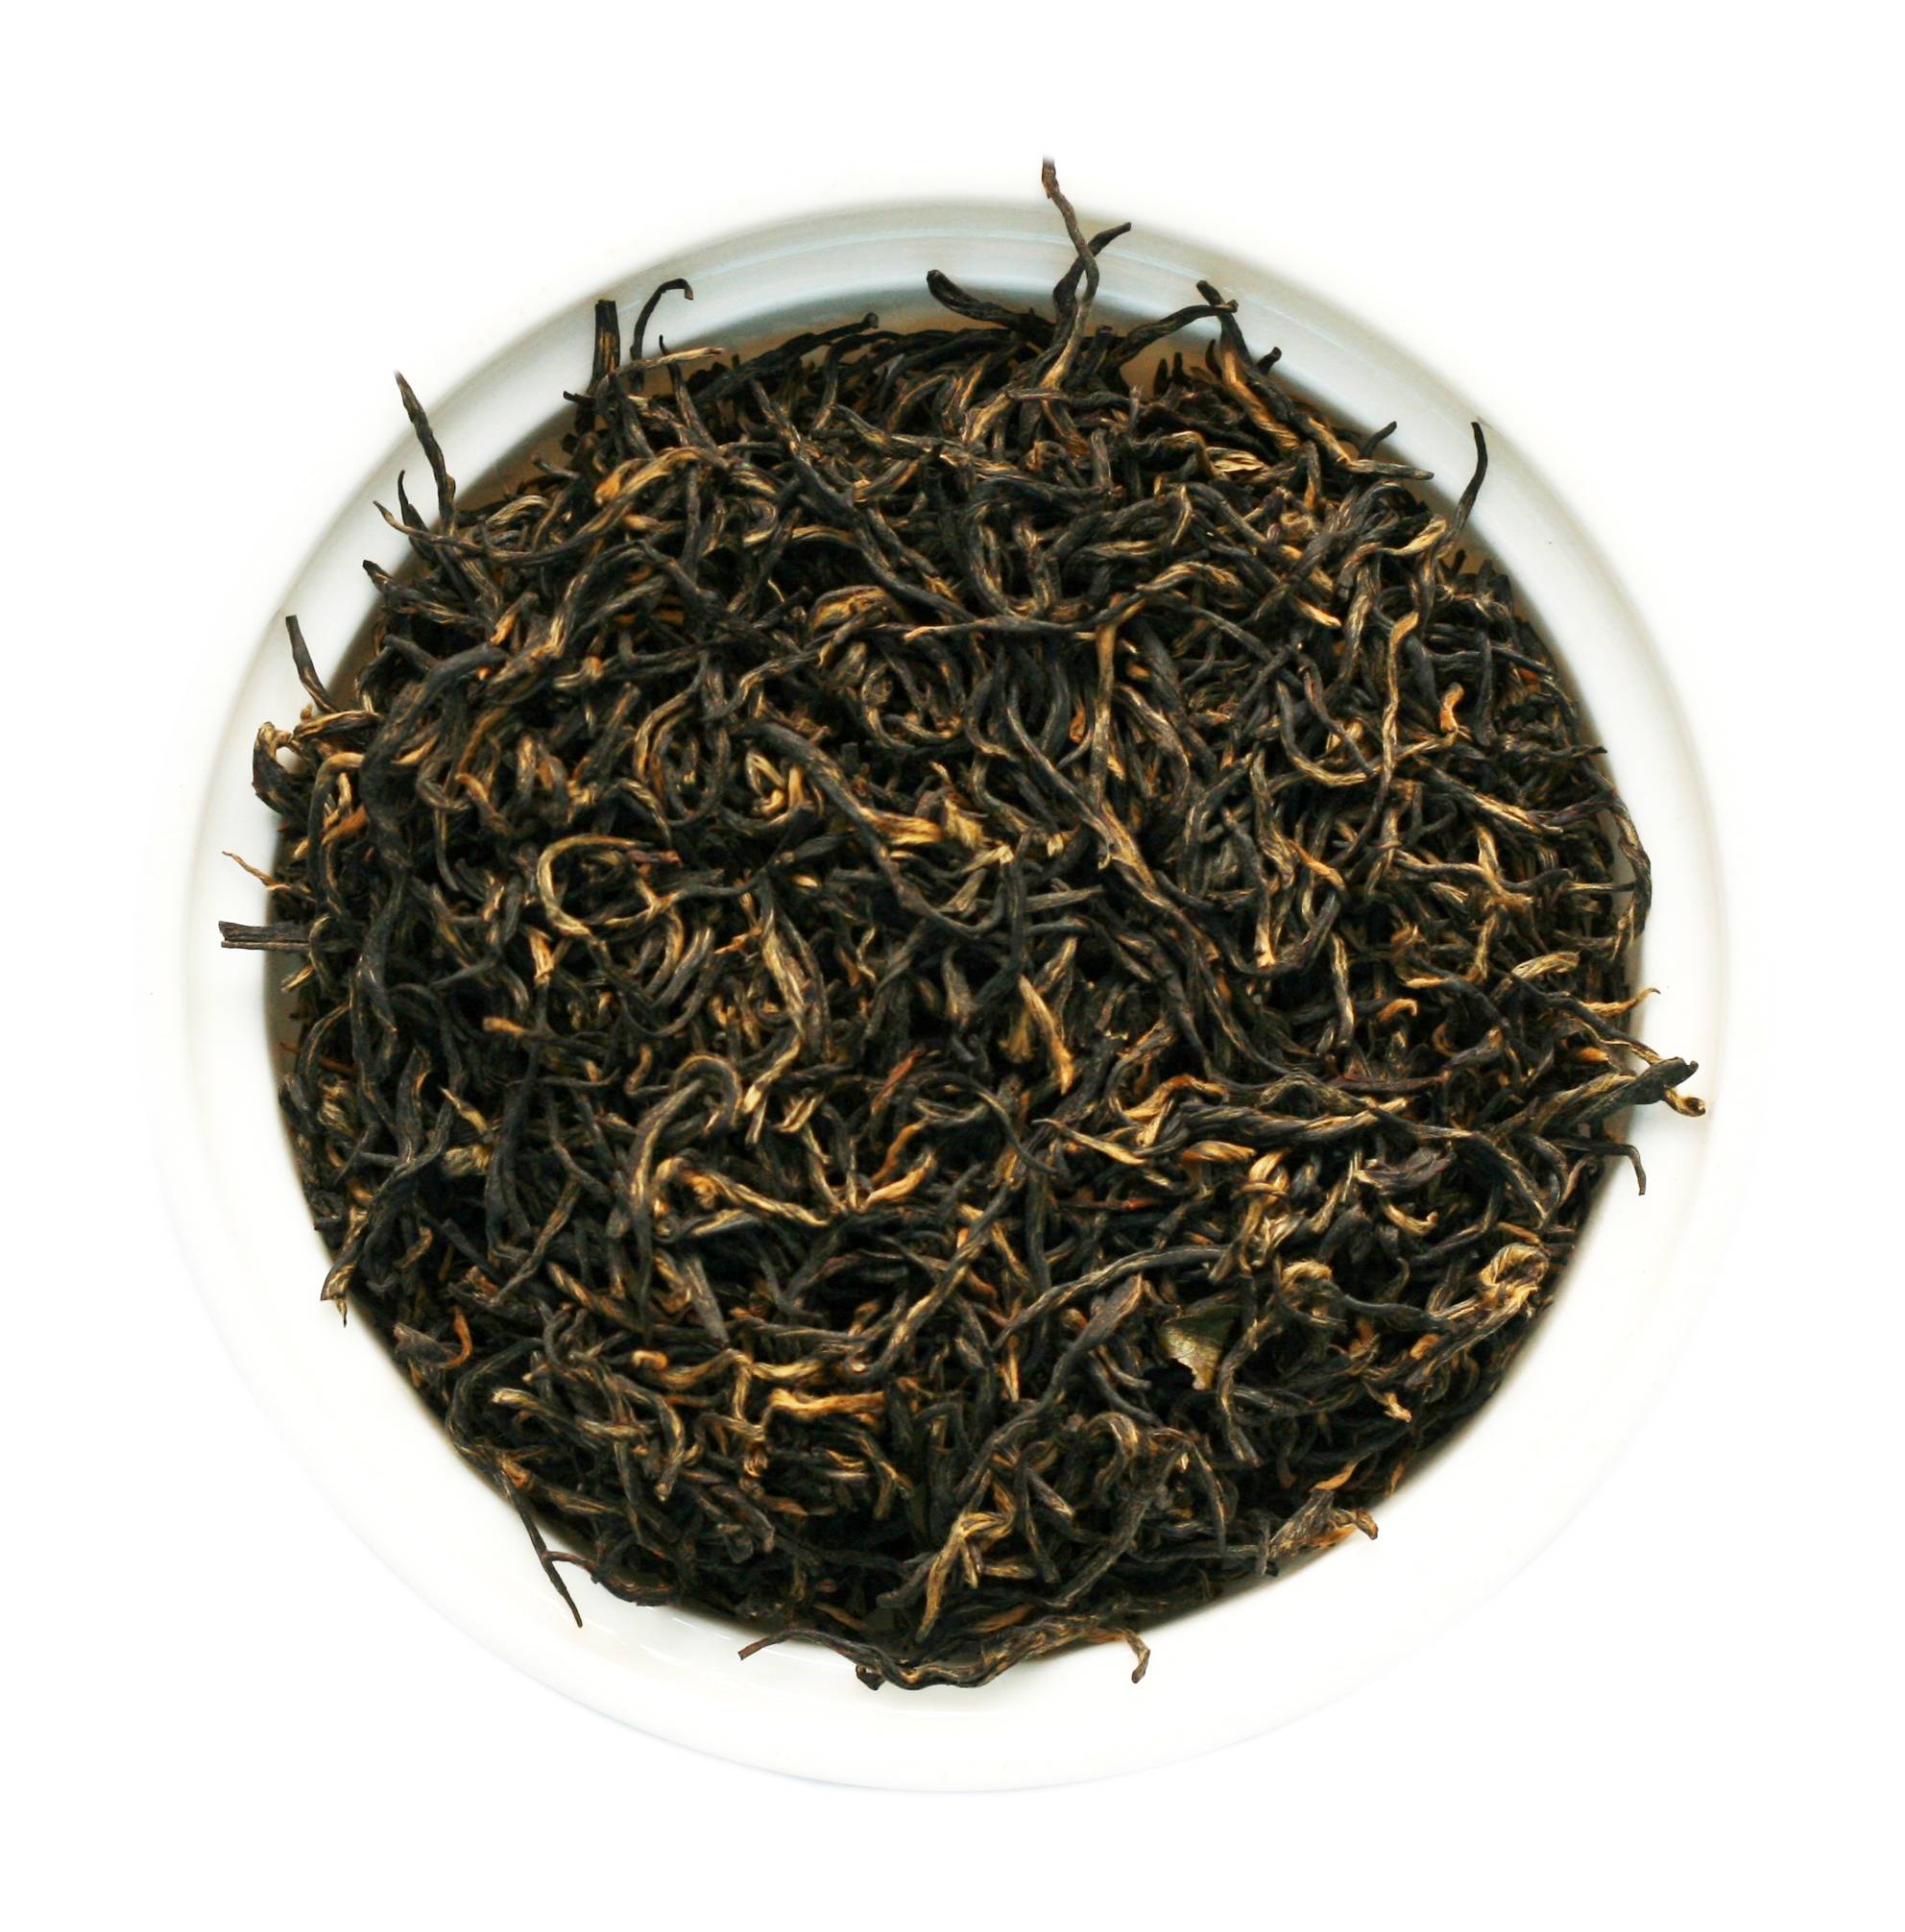 Золотые брови (цзинь цзюнь мэй) – китайский чай элитных сортов